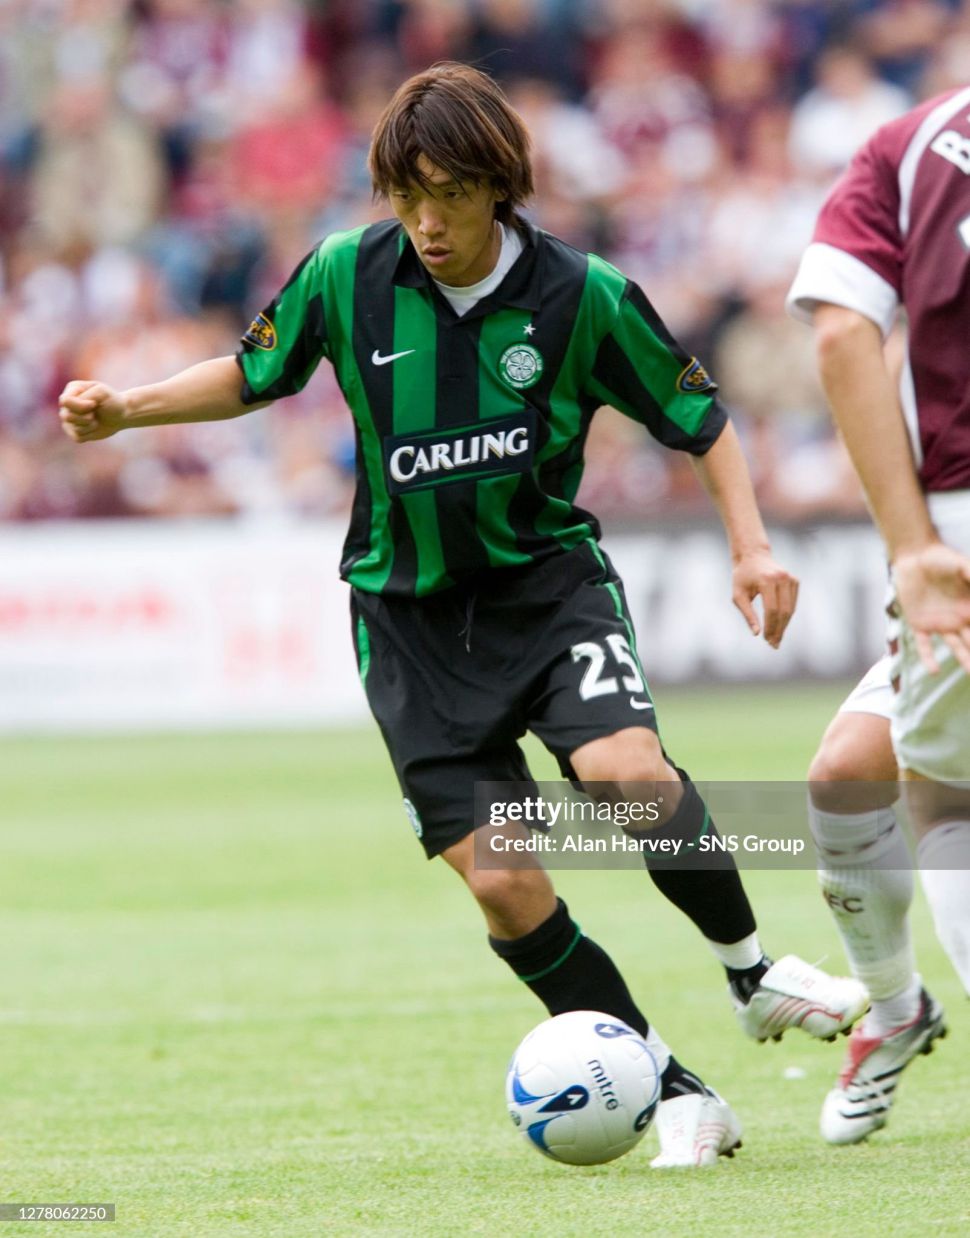 Tượng Nakamura 25 Celtic 2006 2007 away corinthian Select 500 PRO1721